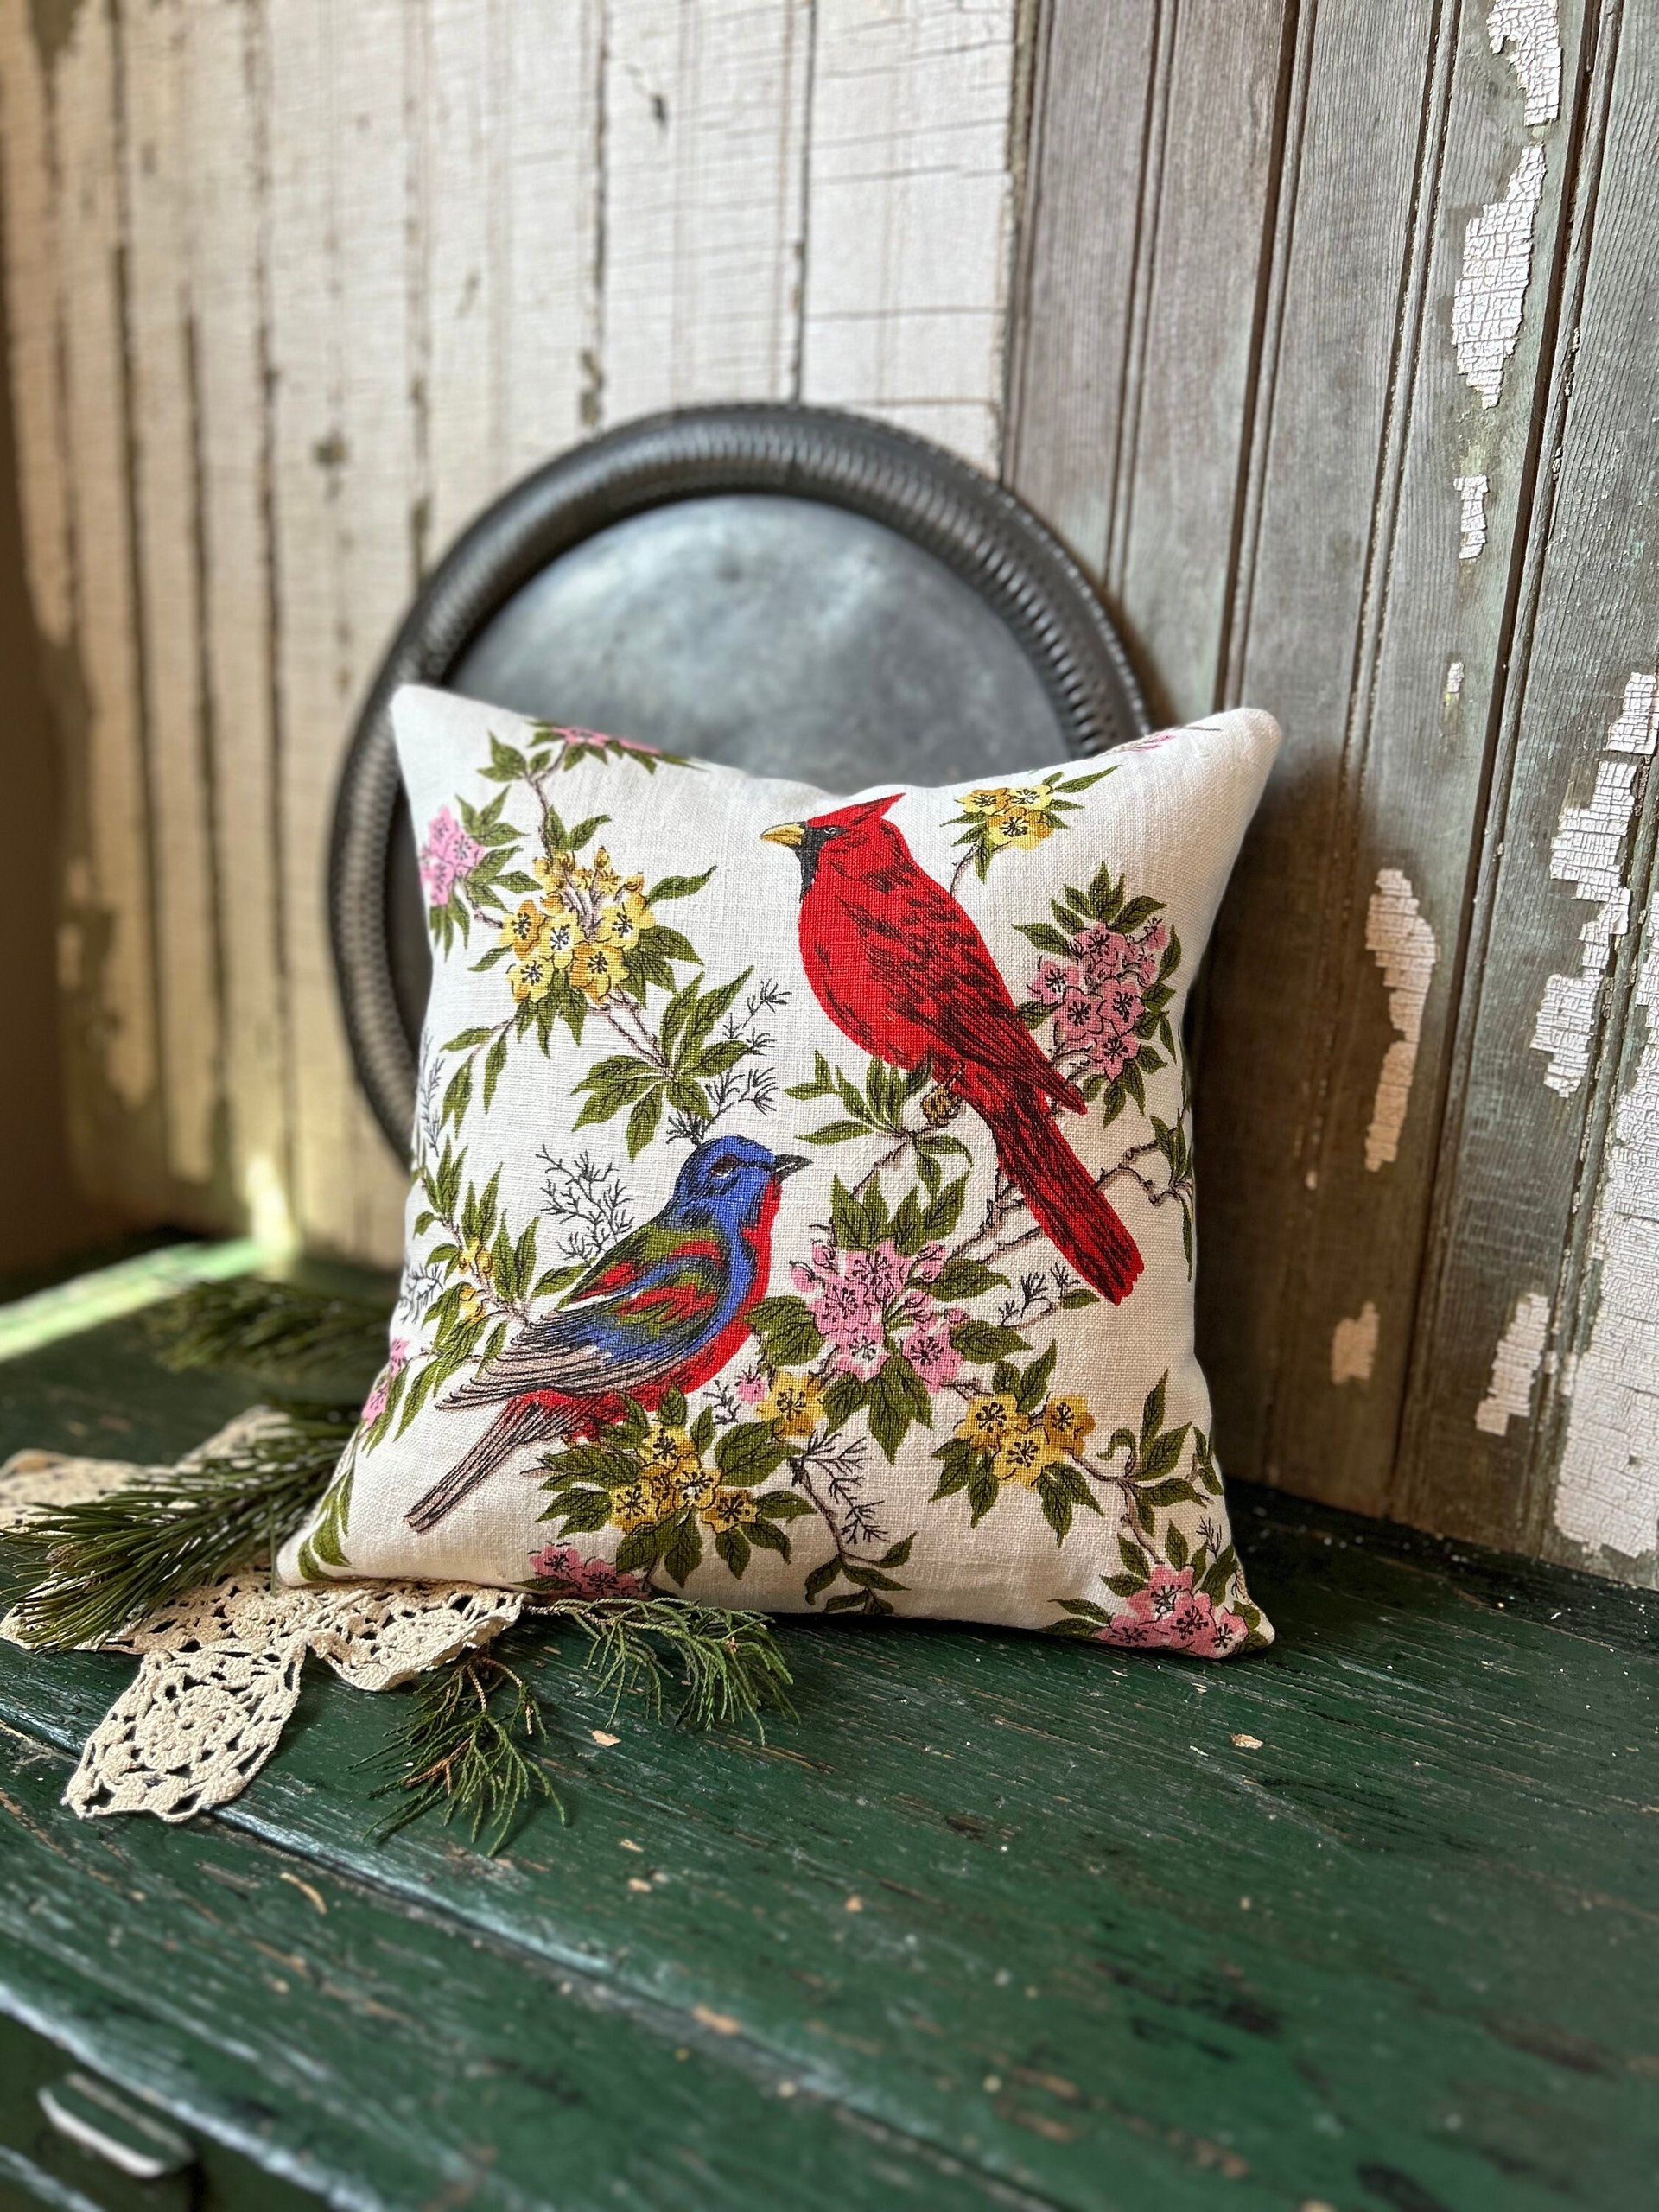 Vintage Linen Bird Pillow, Cardinal, Bluebird, Upcycled Materials